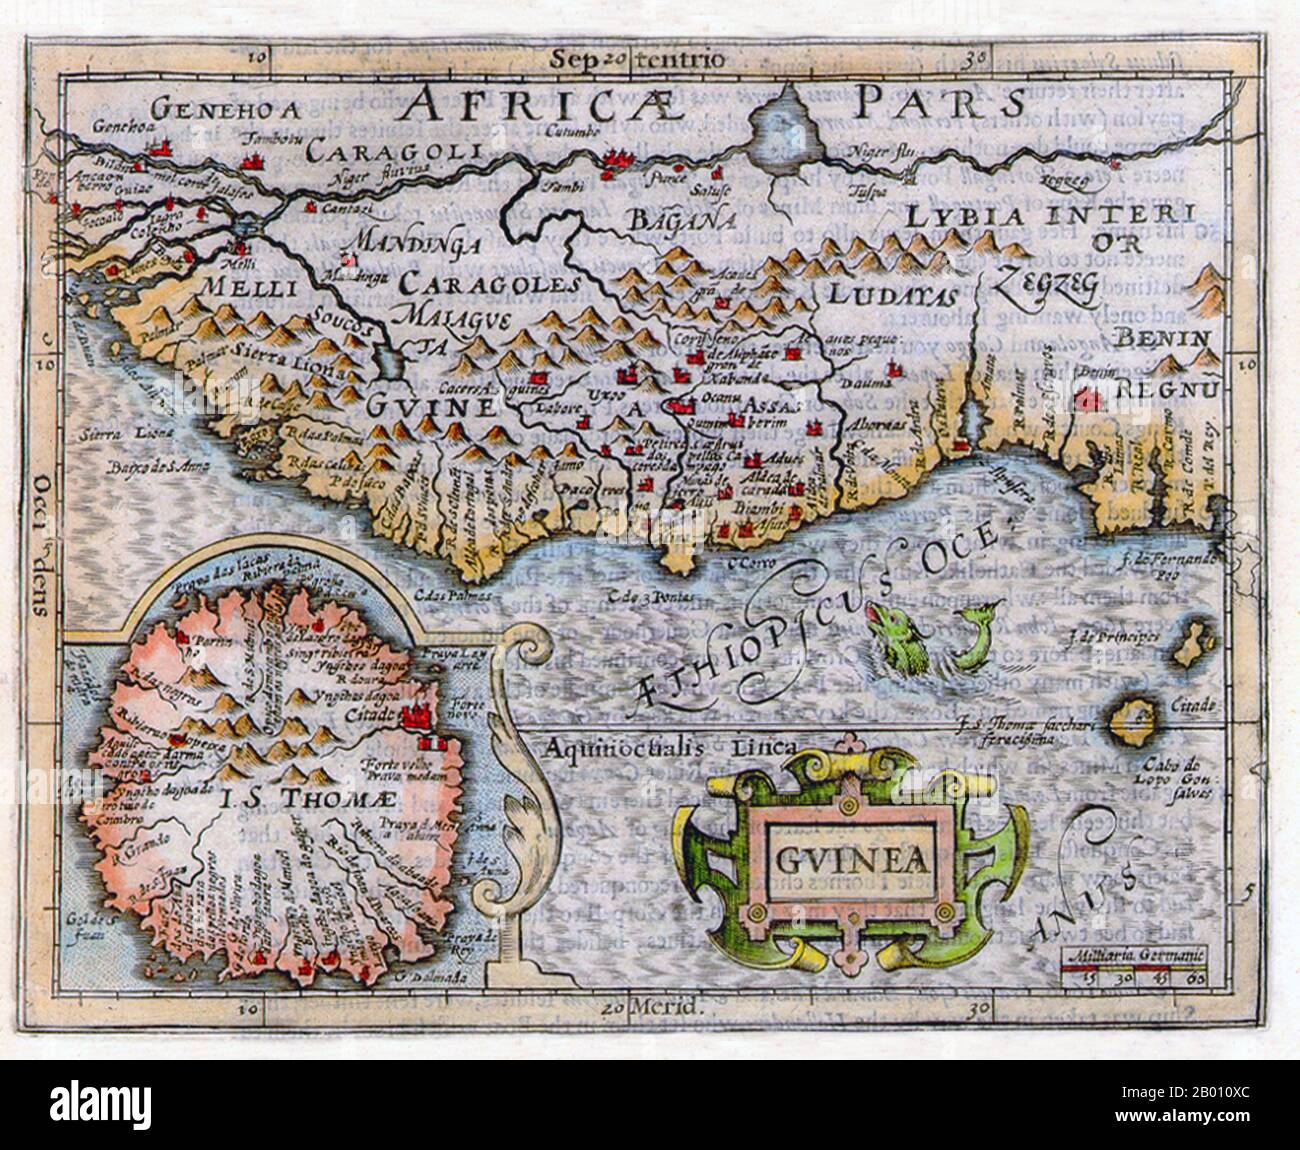 Africa: Mappa della Guinea e delle regioni circostanti di Jodocus Hondius (1563-1612), 1625. Il Regno del Benin Regnu è indicato a sud-est. Foto Stock